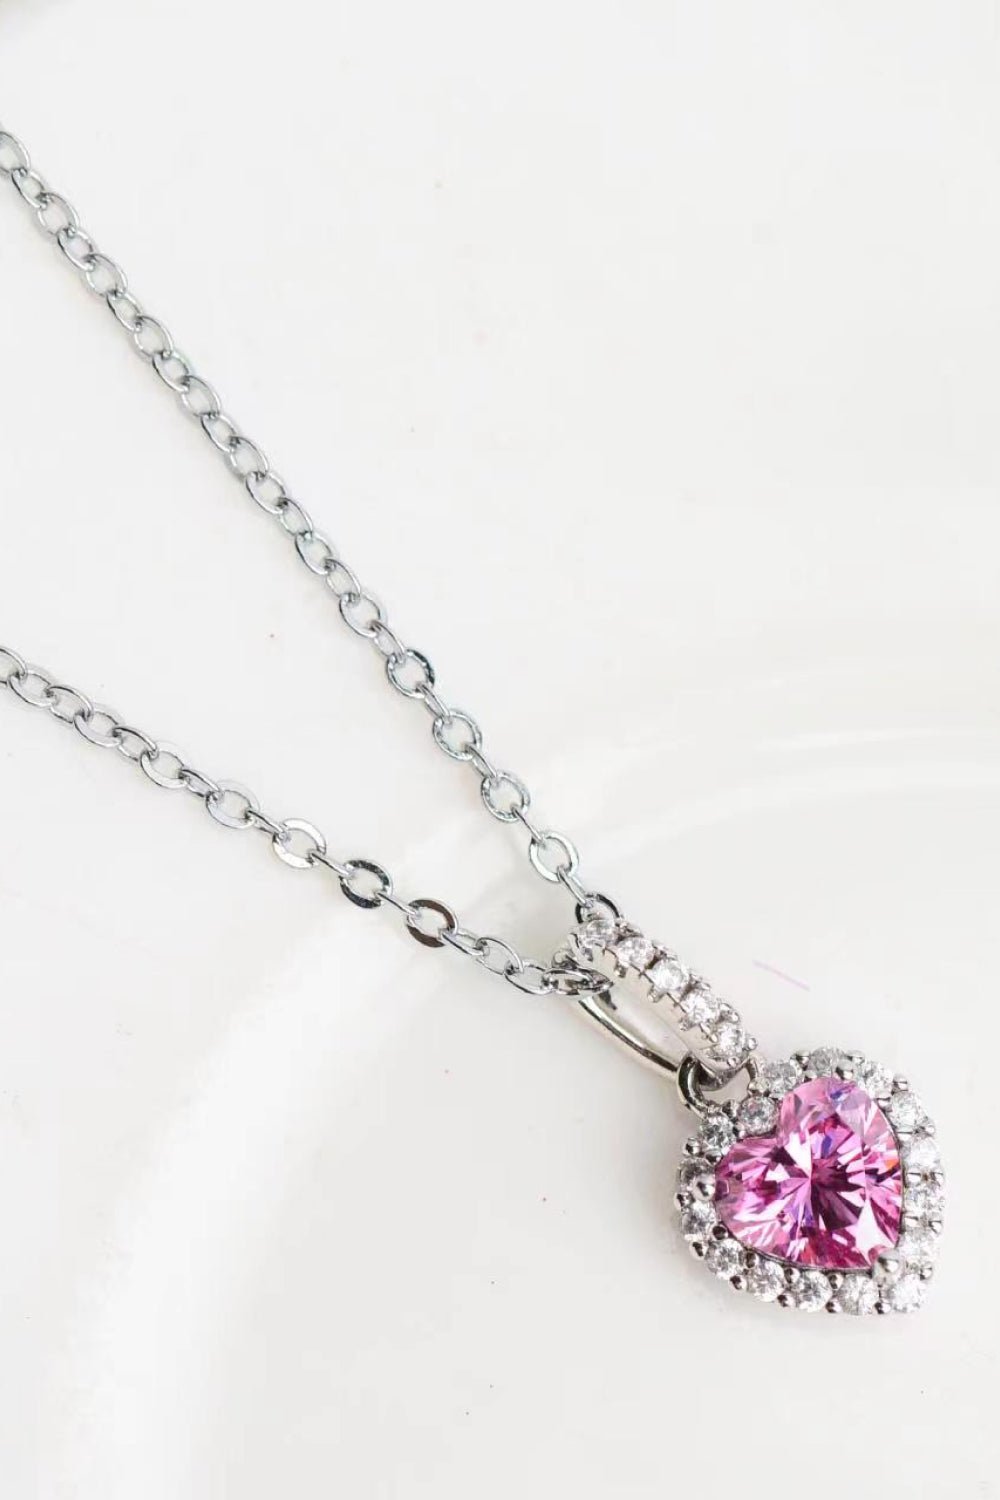 1 Carat Moissanite Heart Pendant Necklace - Uylee's Boutique